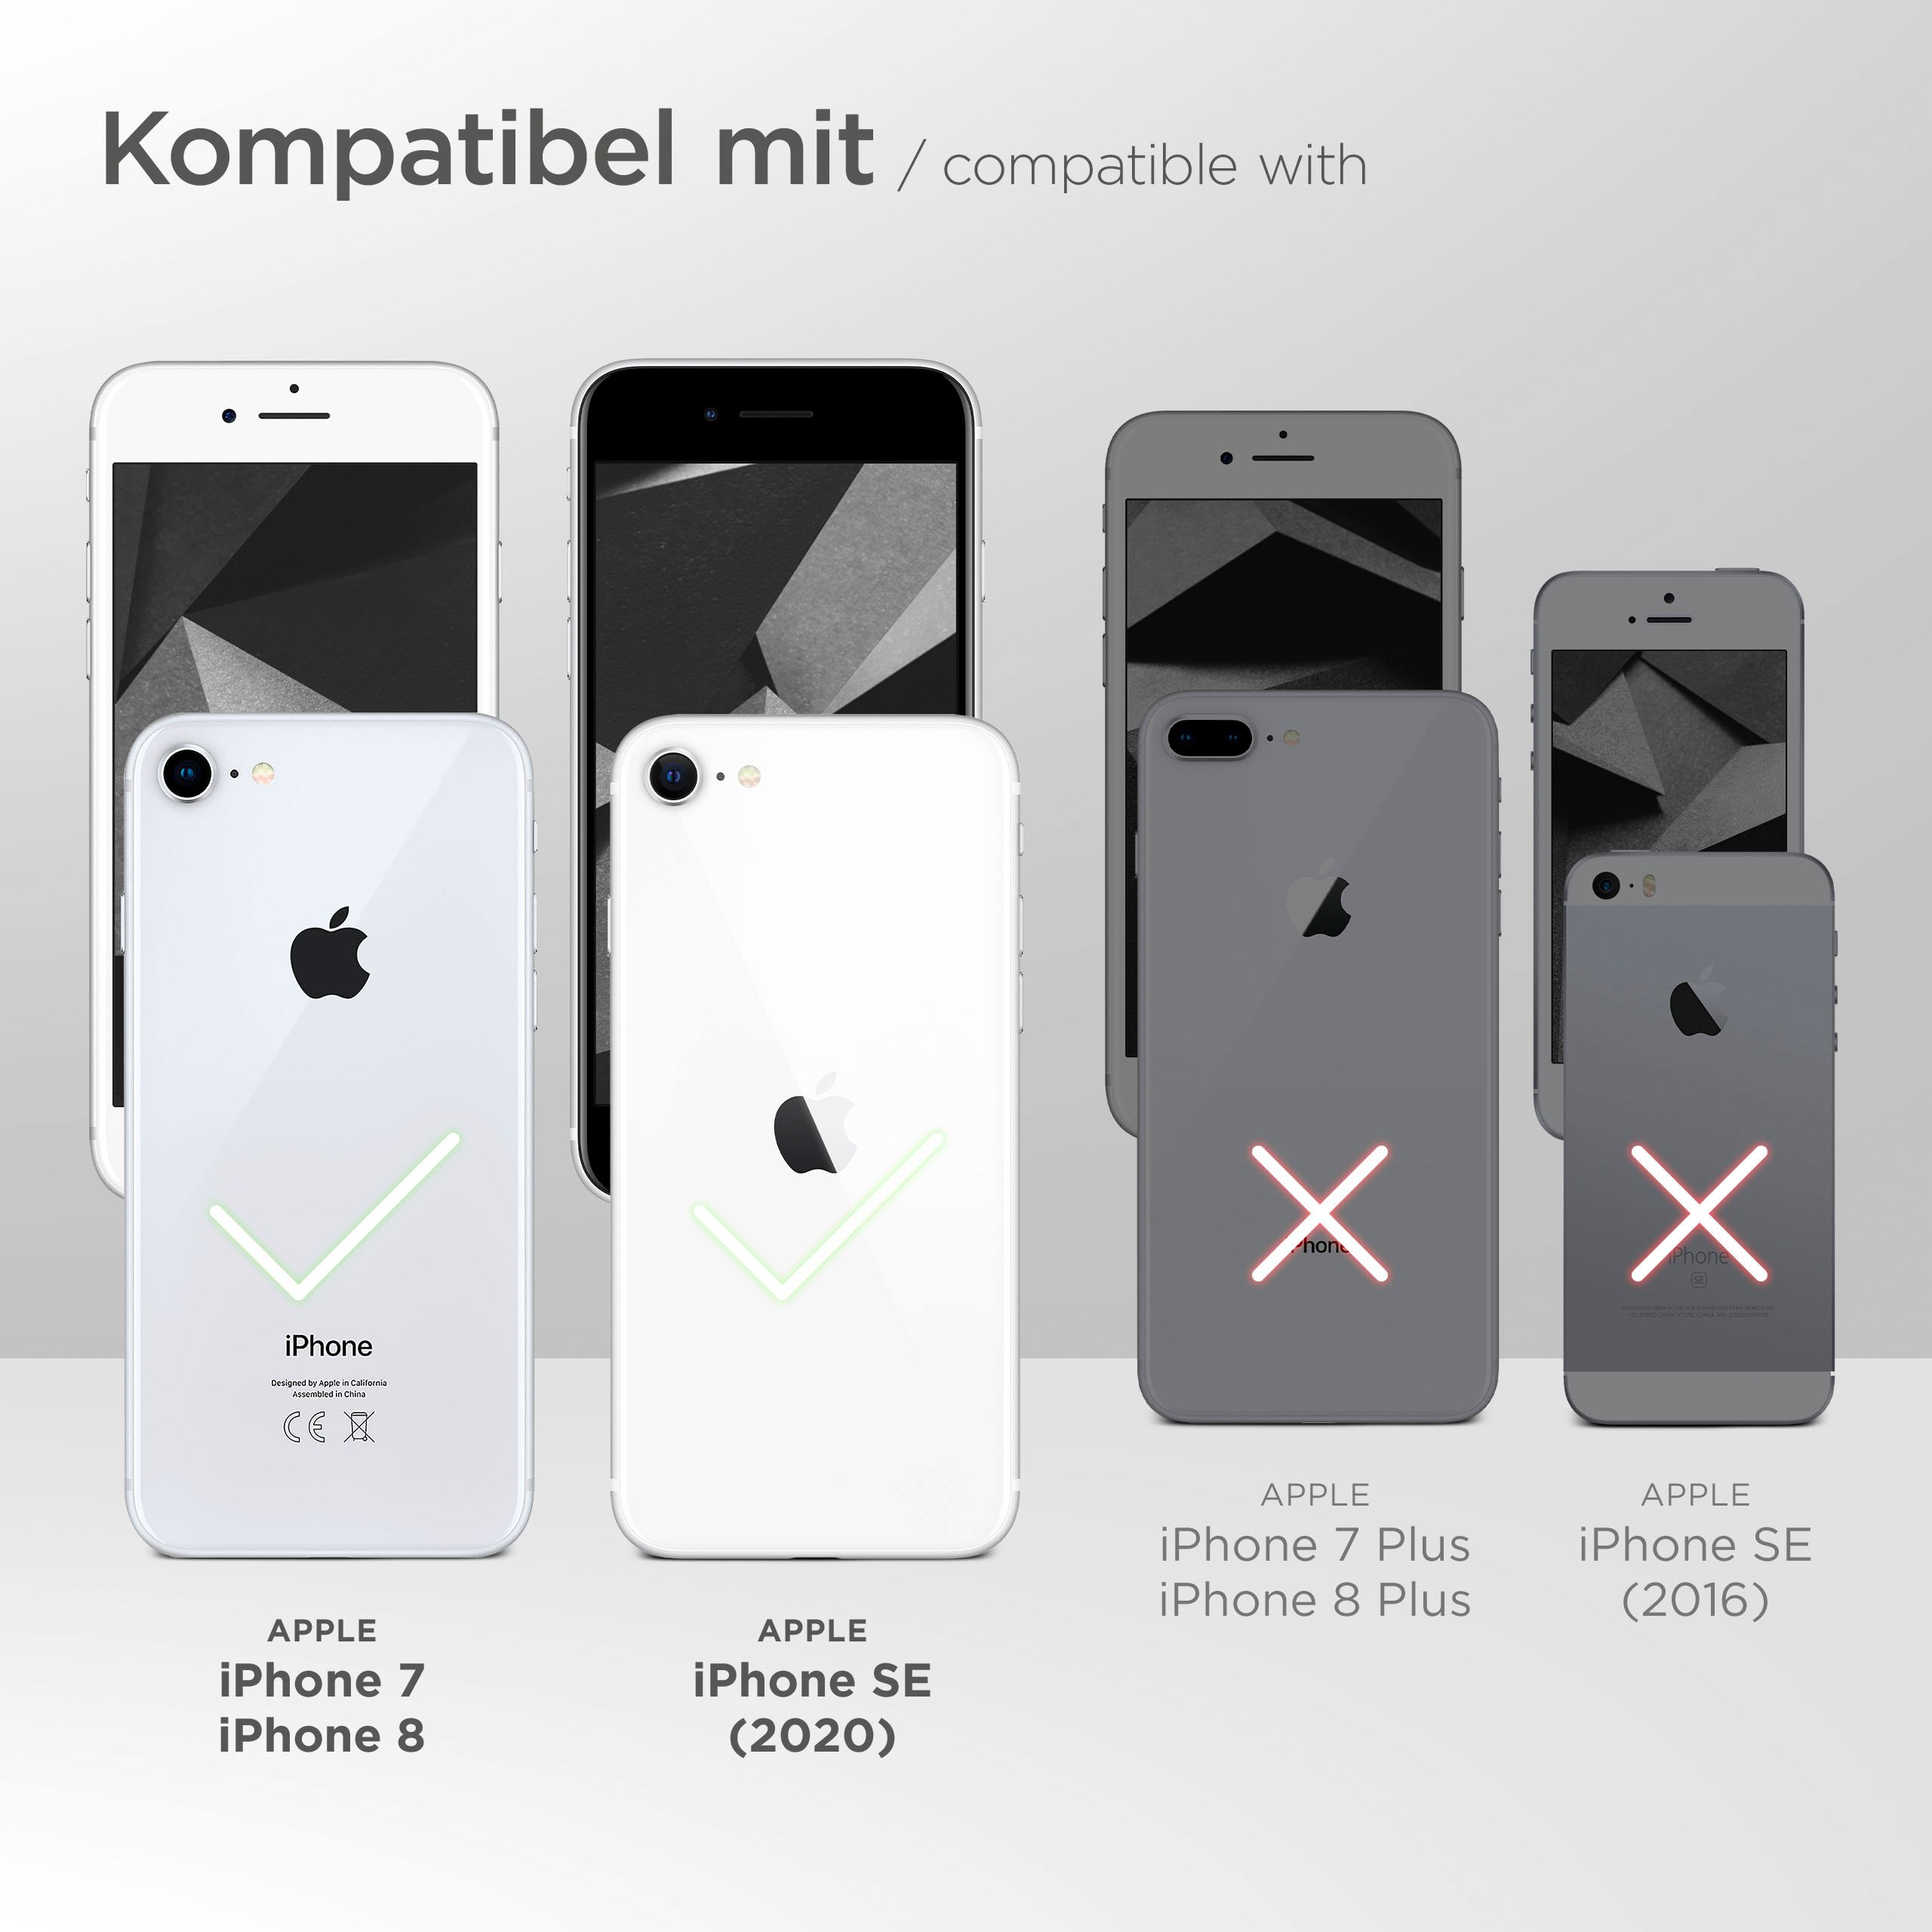 moex Purse Case für Apple iPhone 7 – Handytasche mit Geldbörses aus PU Leder, Geld- & Handyfach